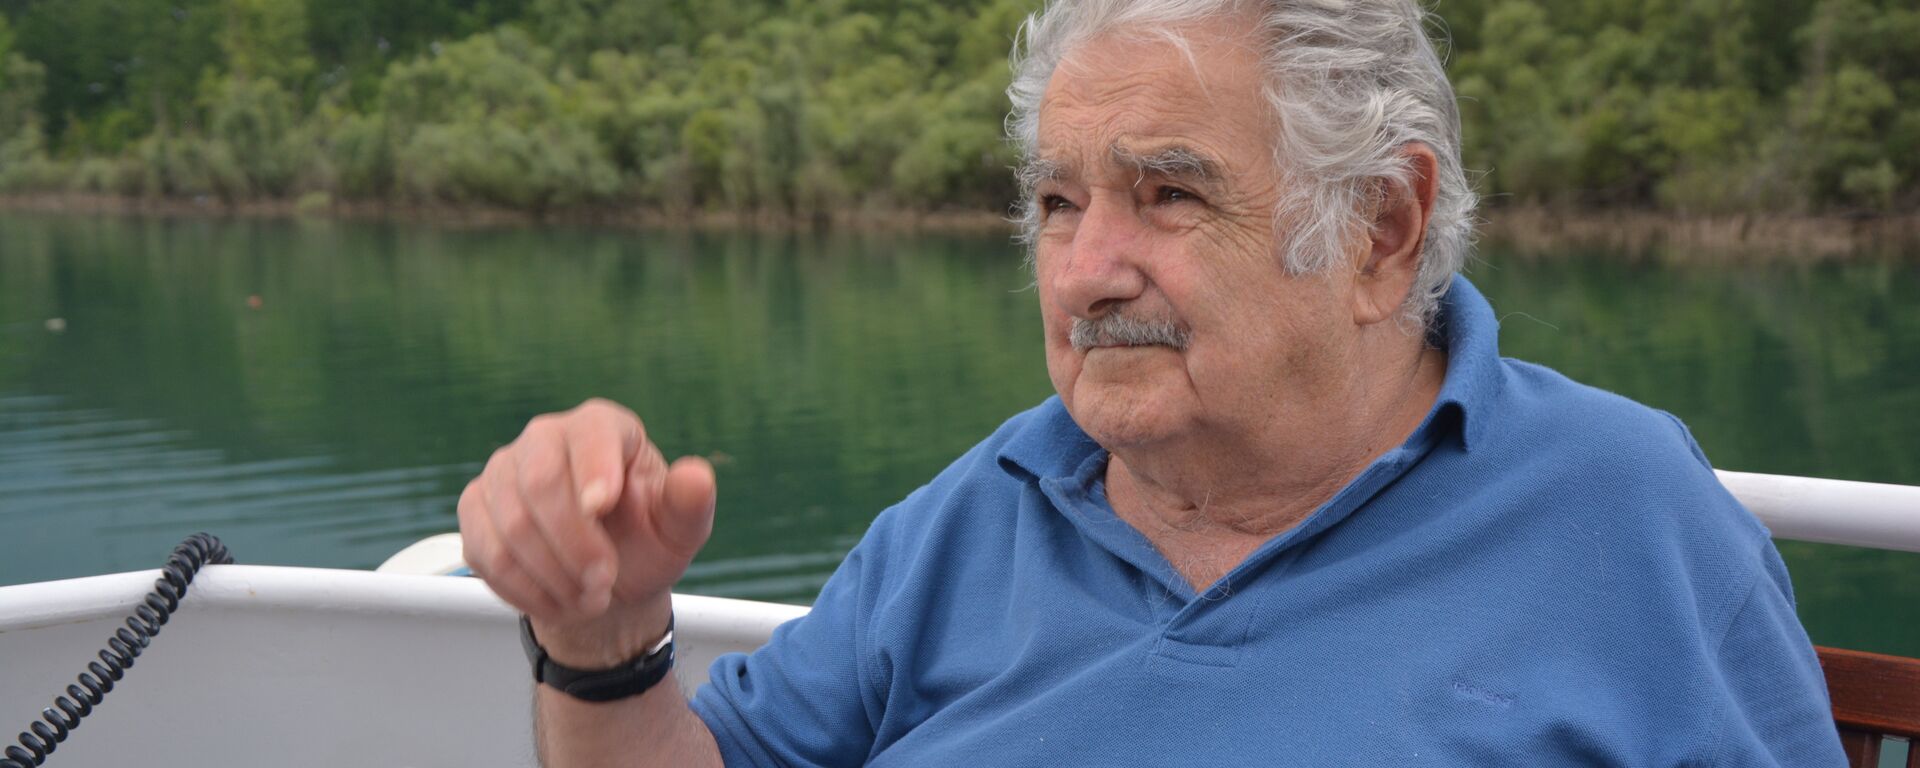 José Mujica, expresidente de Uruguay - Sputnik Mundo, 1920, 14.05.2021